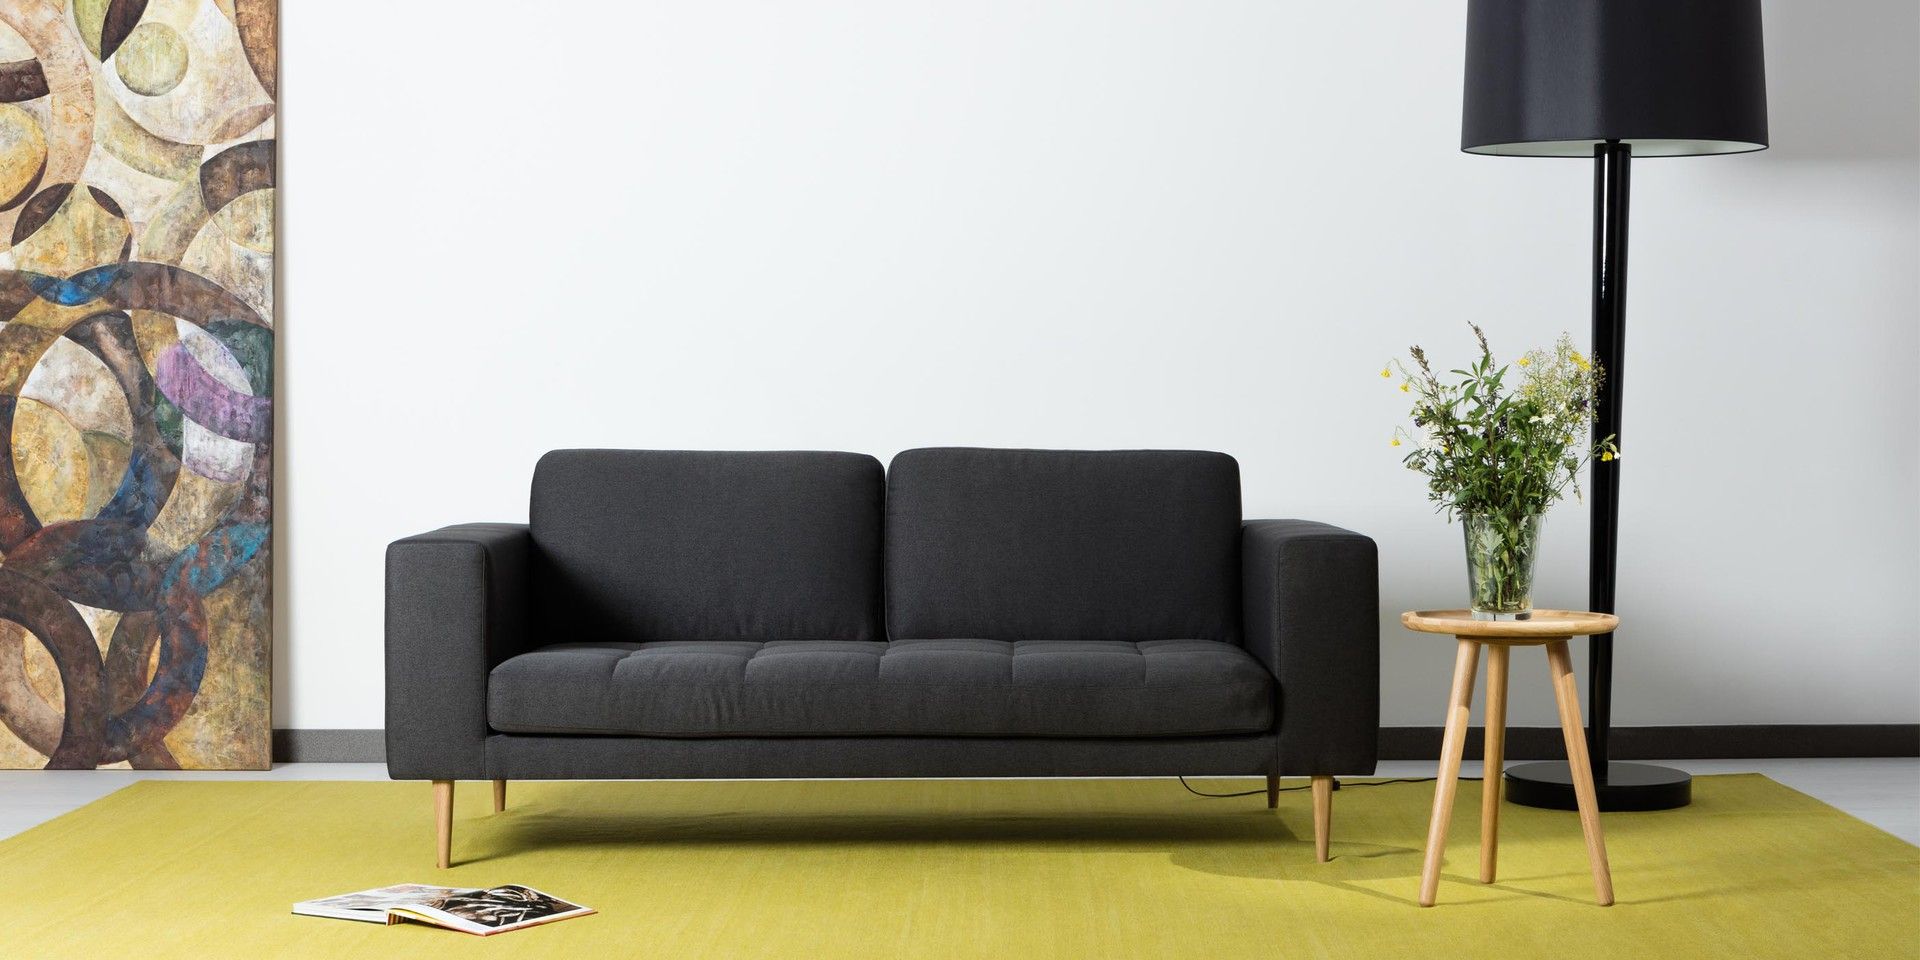 Sofa Markus charakteryzuje się kubistyczną, prostą formą. Komfort zapewniają dwie duże, miękkie poduszki oparcia oraz jedna większa, wypełniająca siedzisko. Fot. Sits